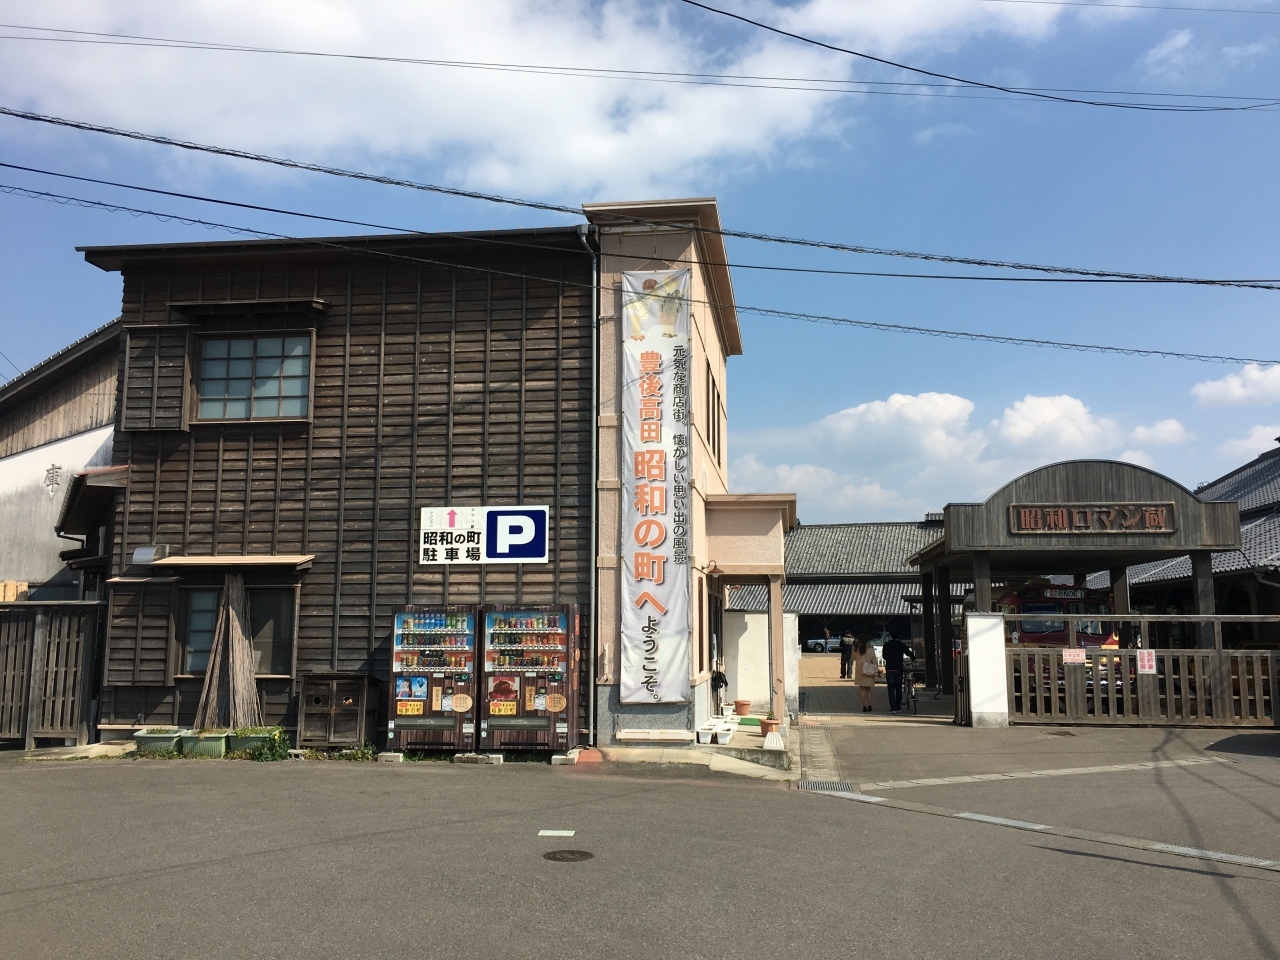 宇佐市の隣にある、豊後高田市に着きました。

昭和の雰囲気がある町並みが残っています。

まずは昭和ロマン蔵という施設に行きました。
